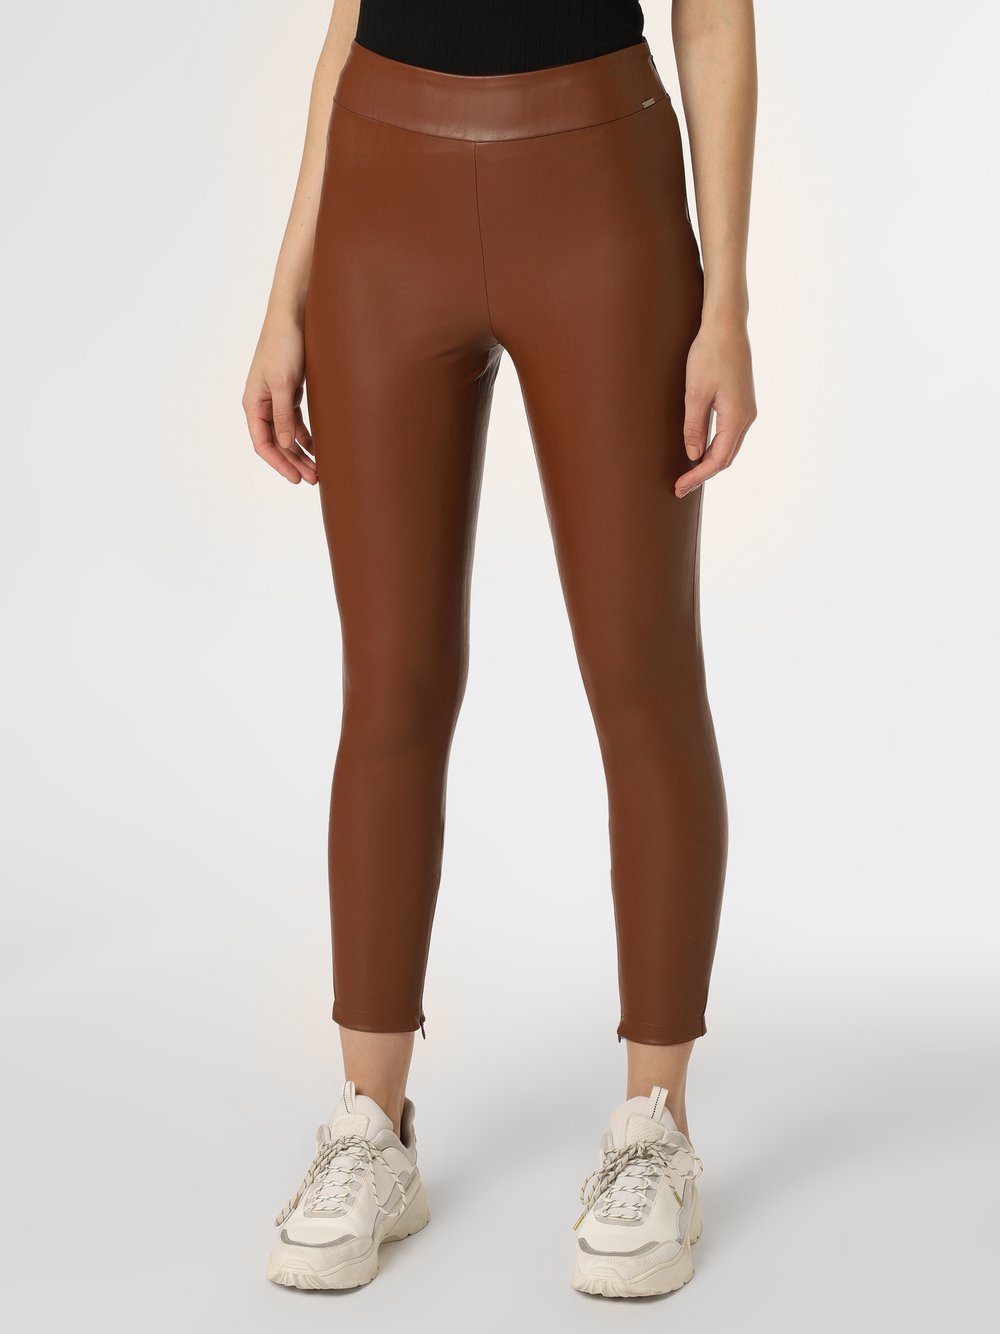 GUESS - Spodnie damskie, brązowy